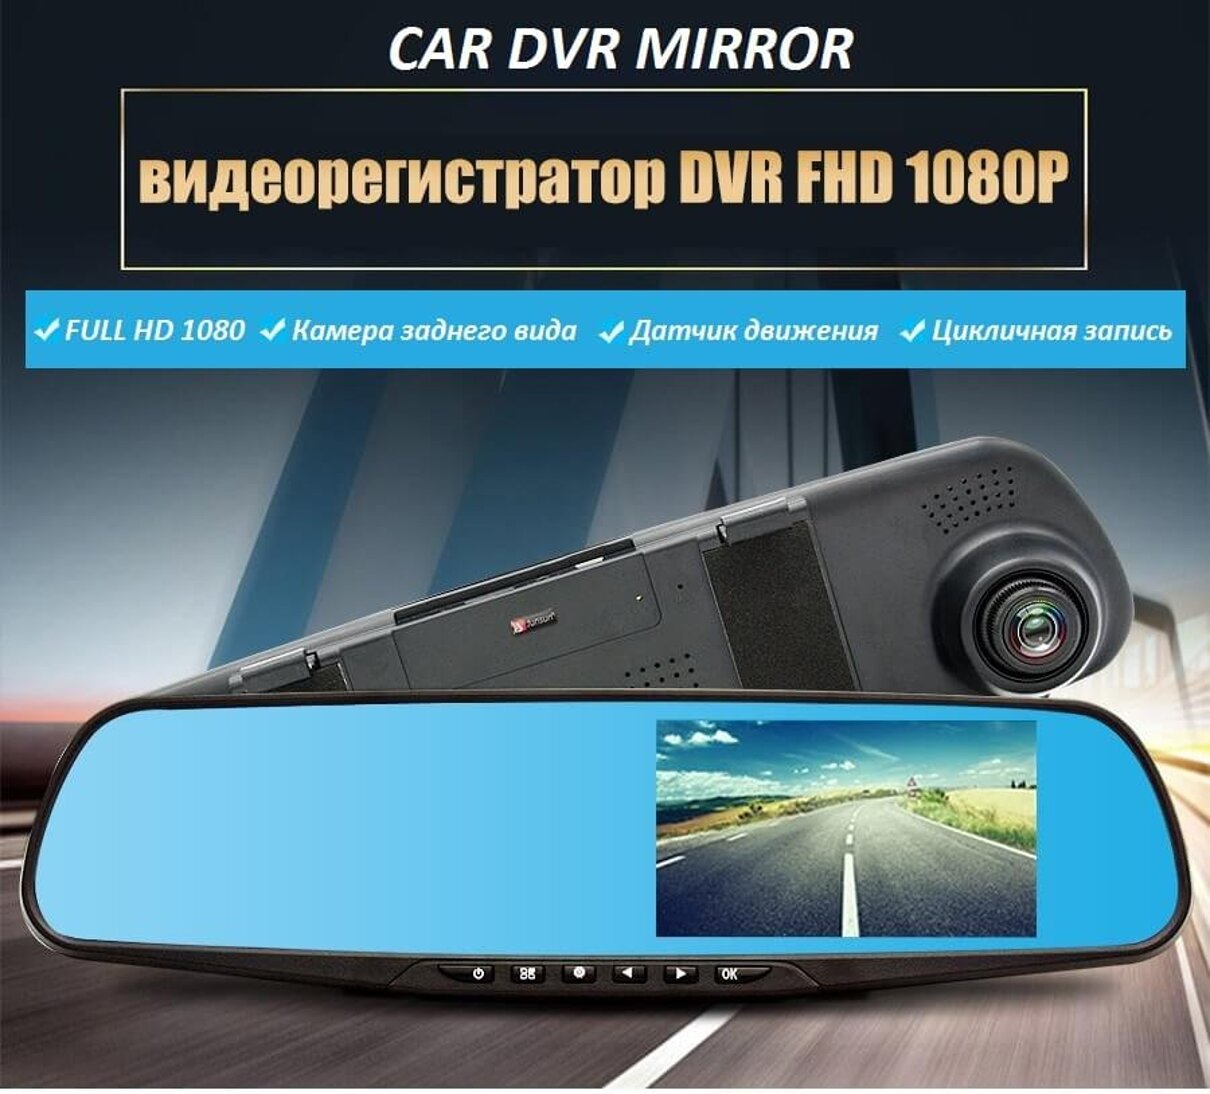 Радар детектор зеркало рейтинг. Видеорегистратор зеркало Миррор. Видеорегистратор car DVRS Mirror. Car DVR Mirror видеорегистратор.